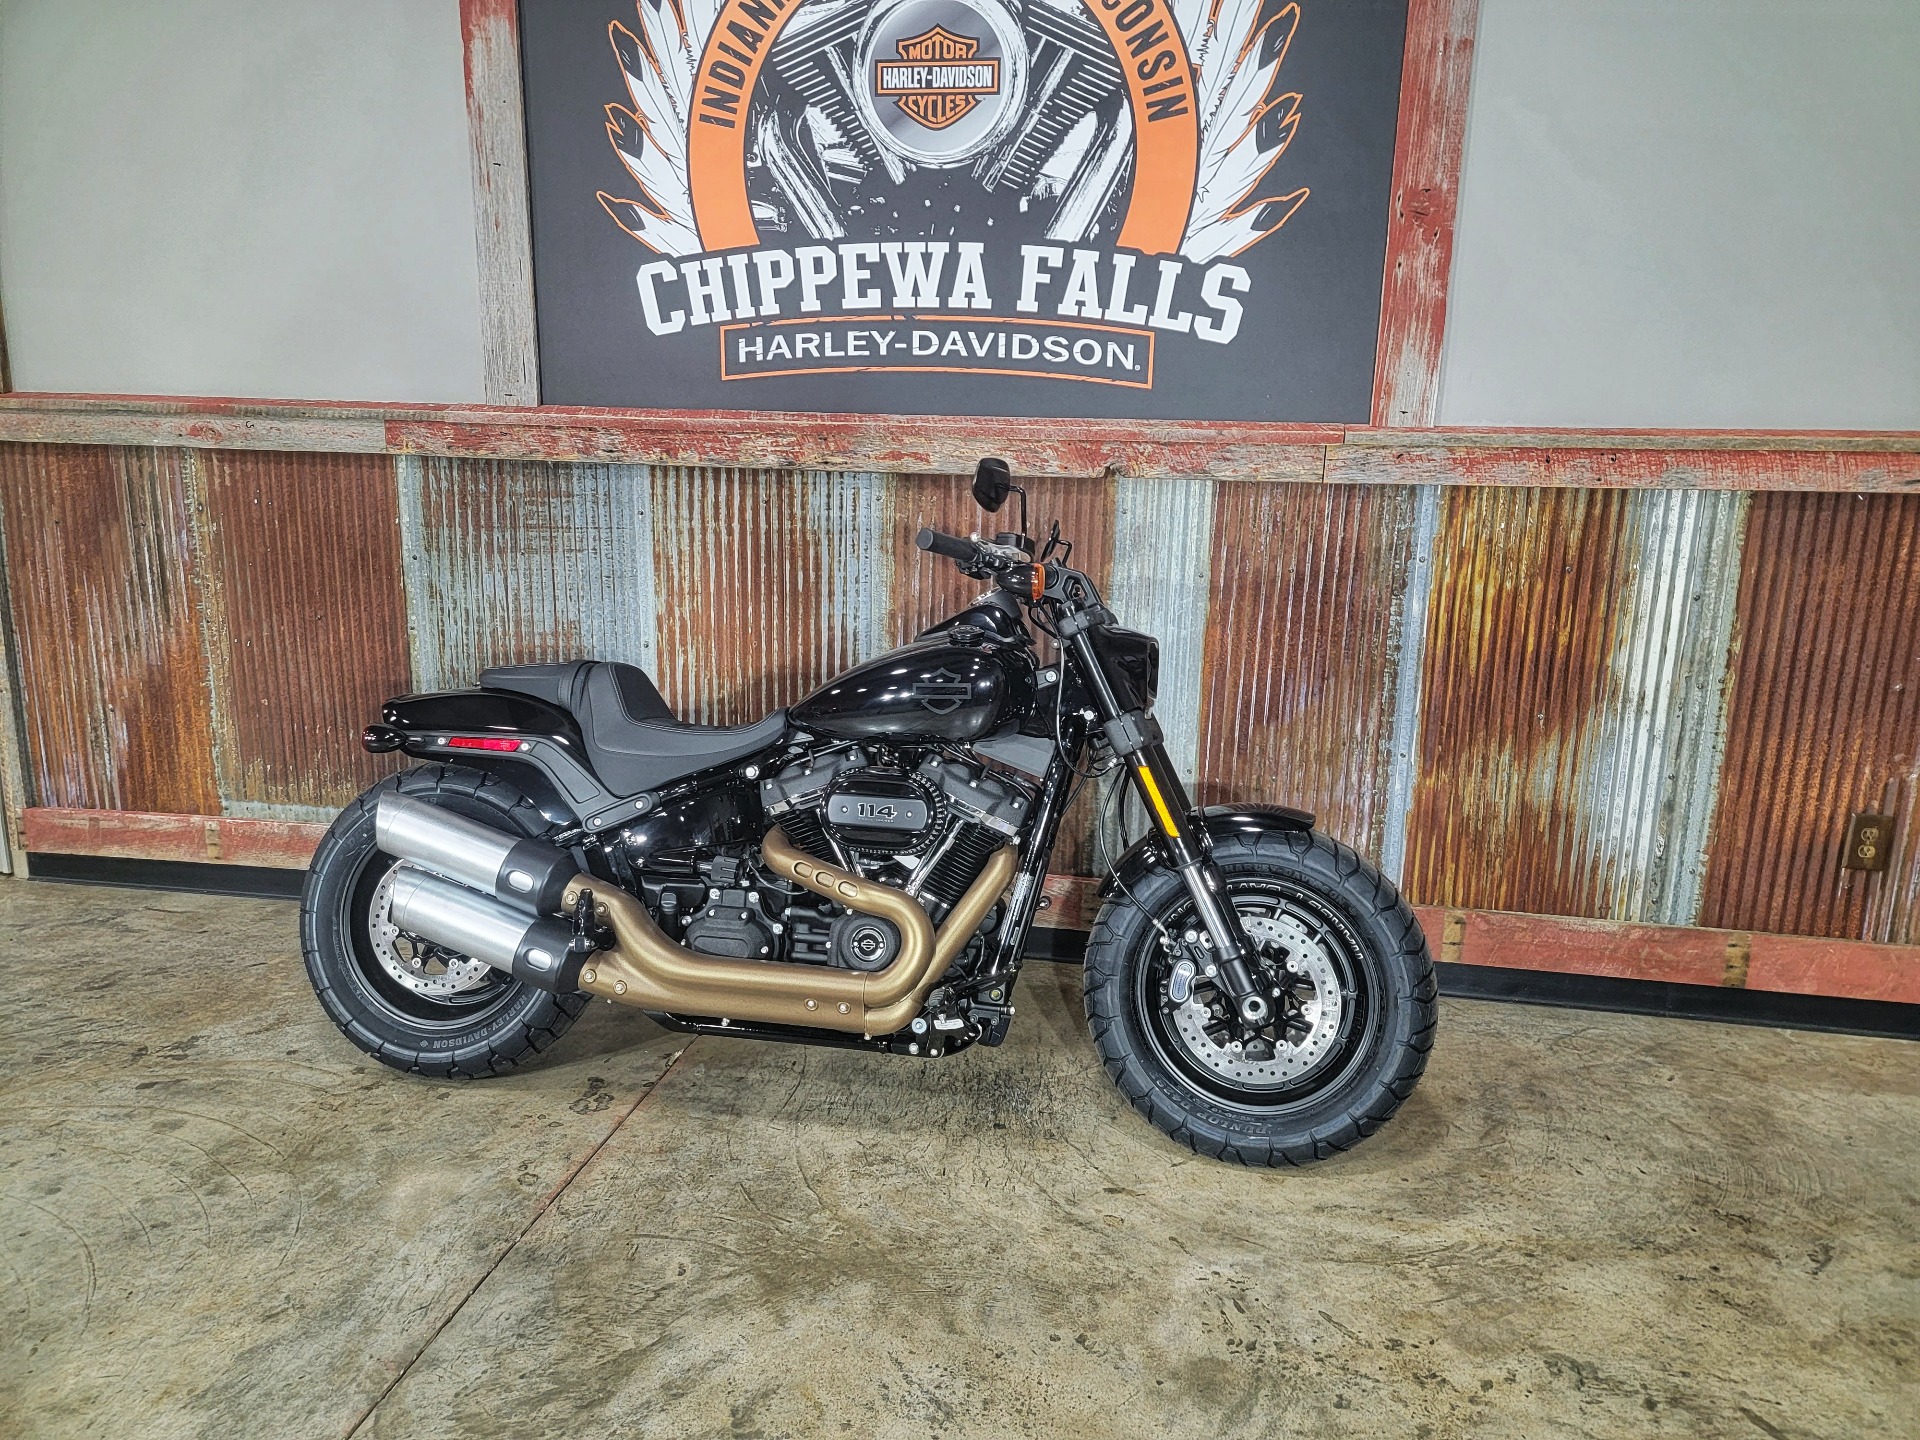 New 2021 Harley Davidson Fat Bob 114 Vivid Black Motorcycles In Chippewa Falls Wi Fx031571